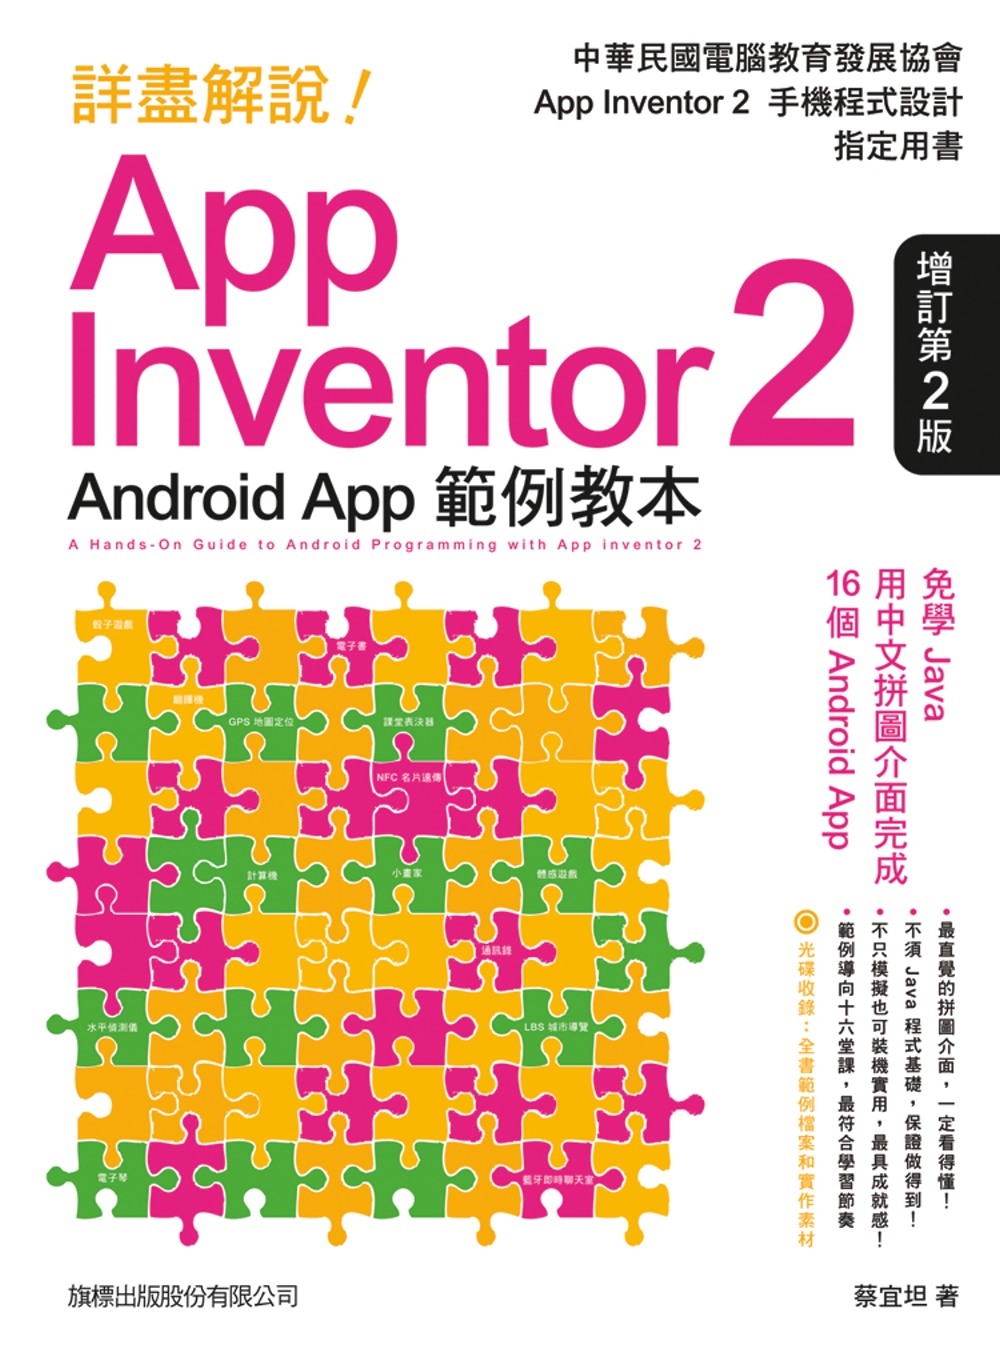 詳盡解說!App Inventor 2 Android Ap...